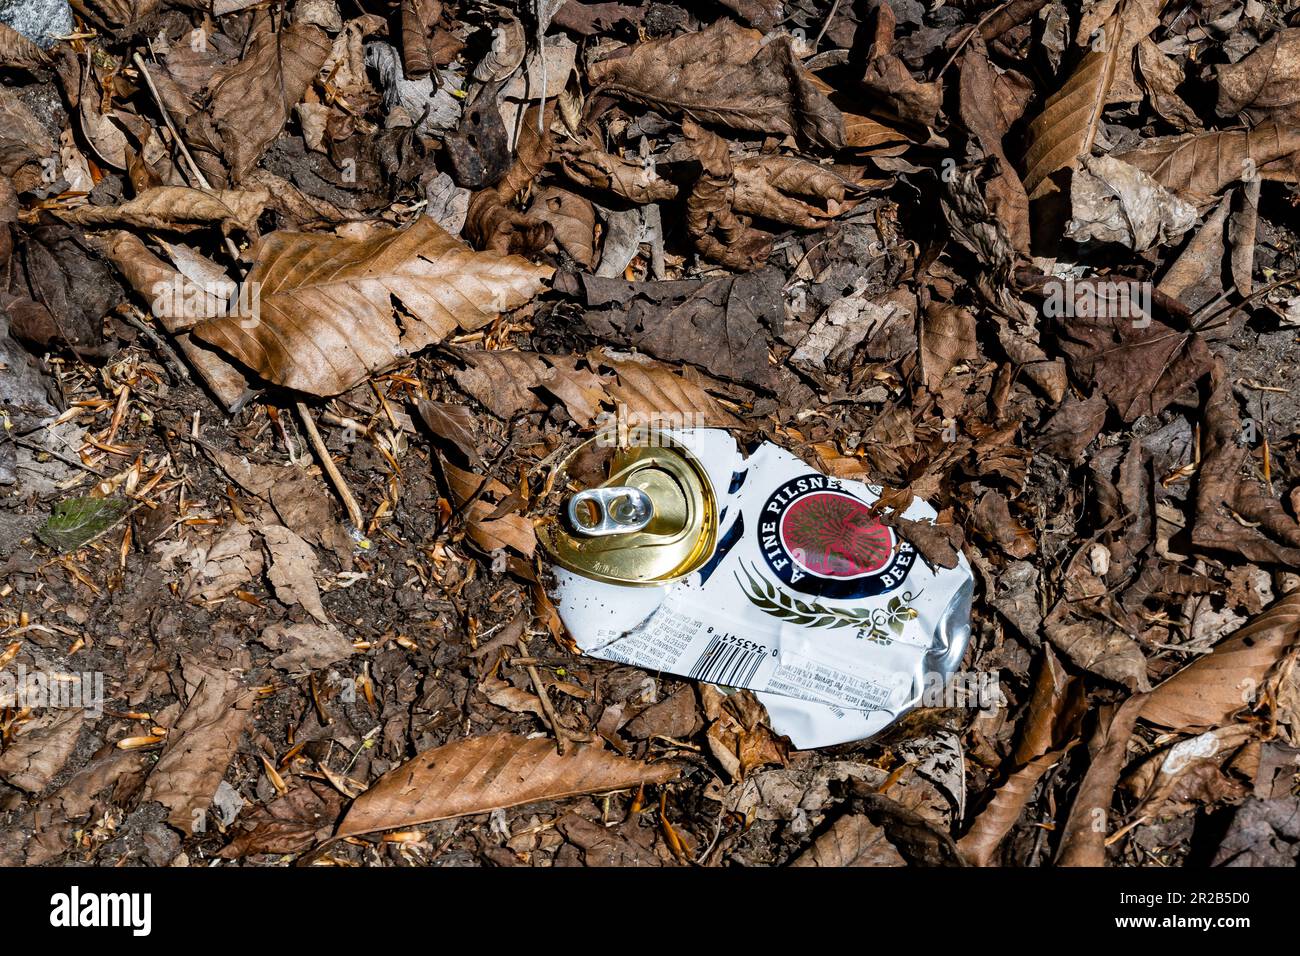 Une bière Miller Lite aplatie écrasée peut être jetée dans les feuilles des montagnes Adirondack, NY USA Banque D'Images